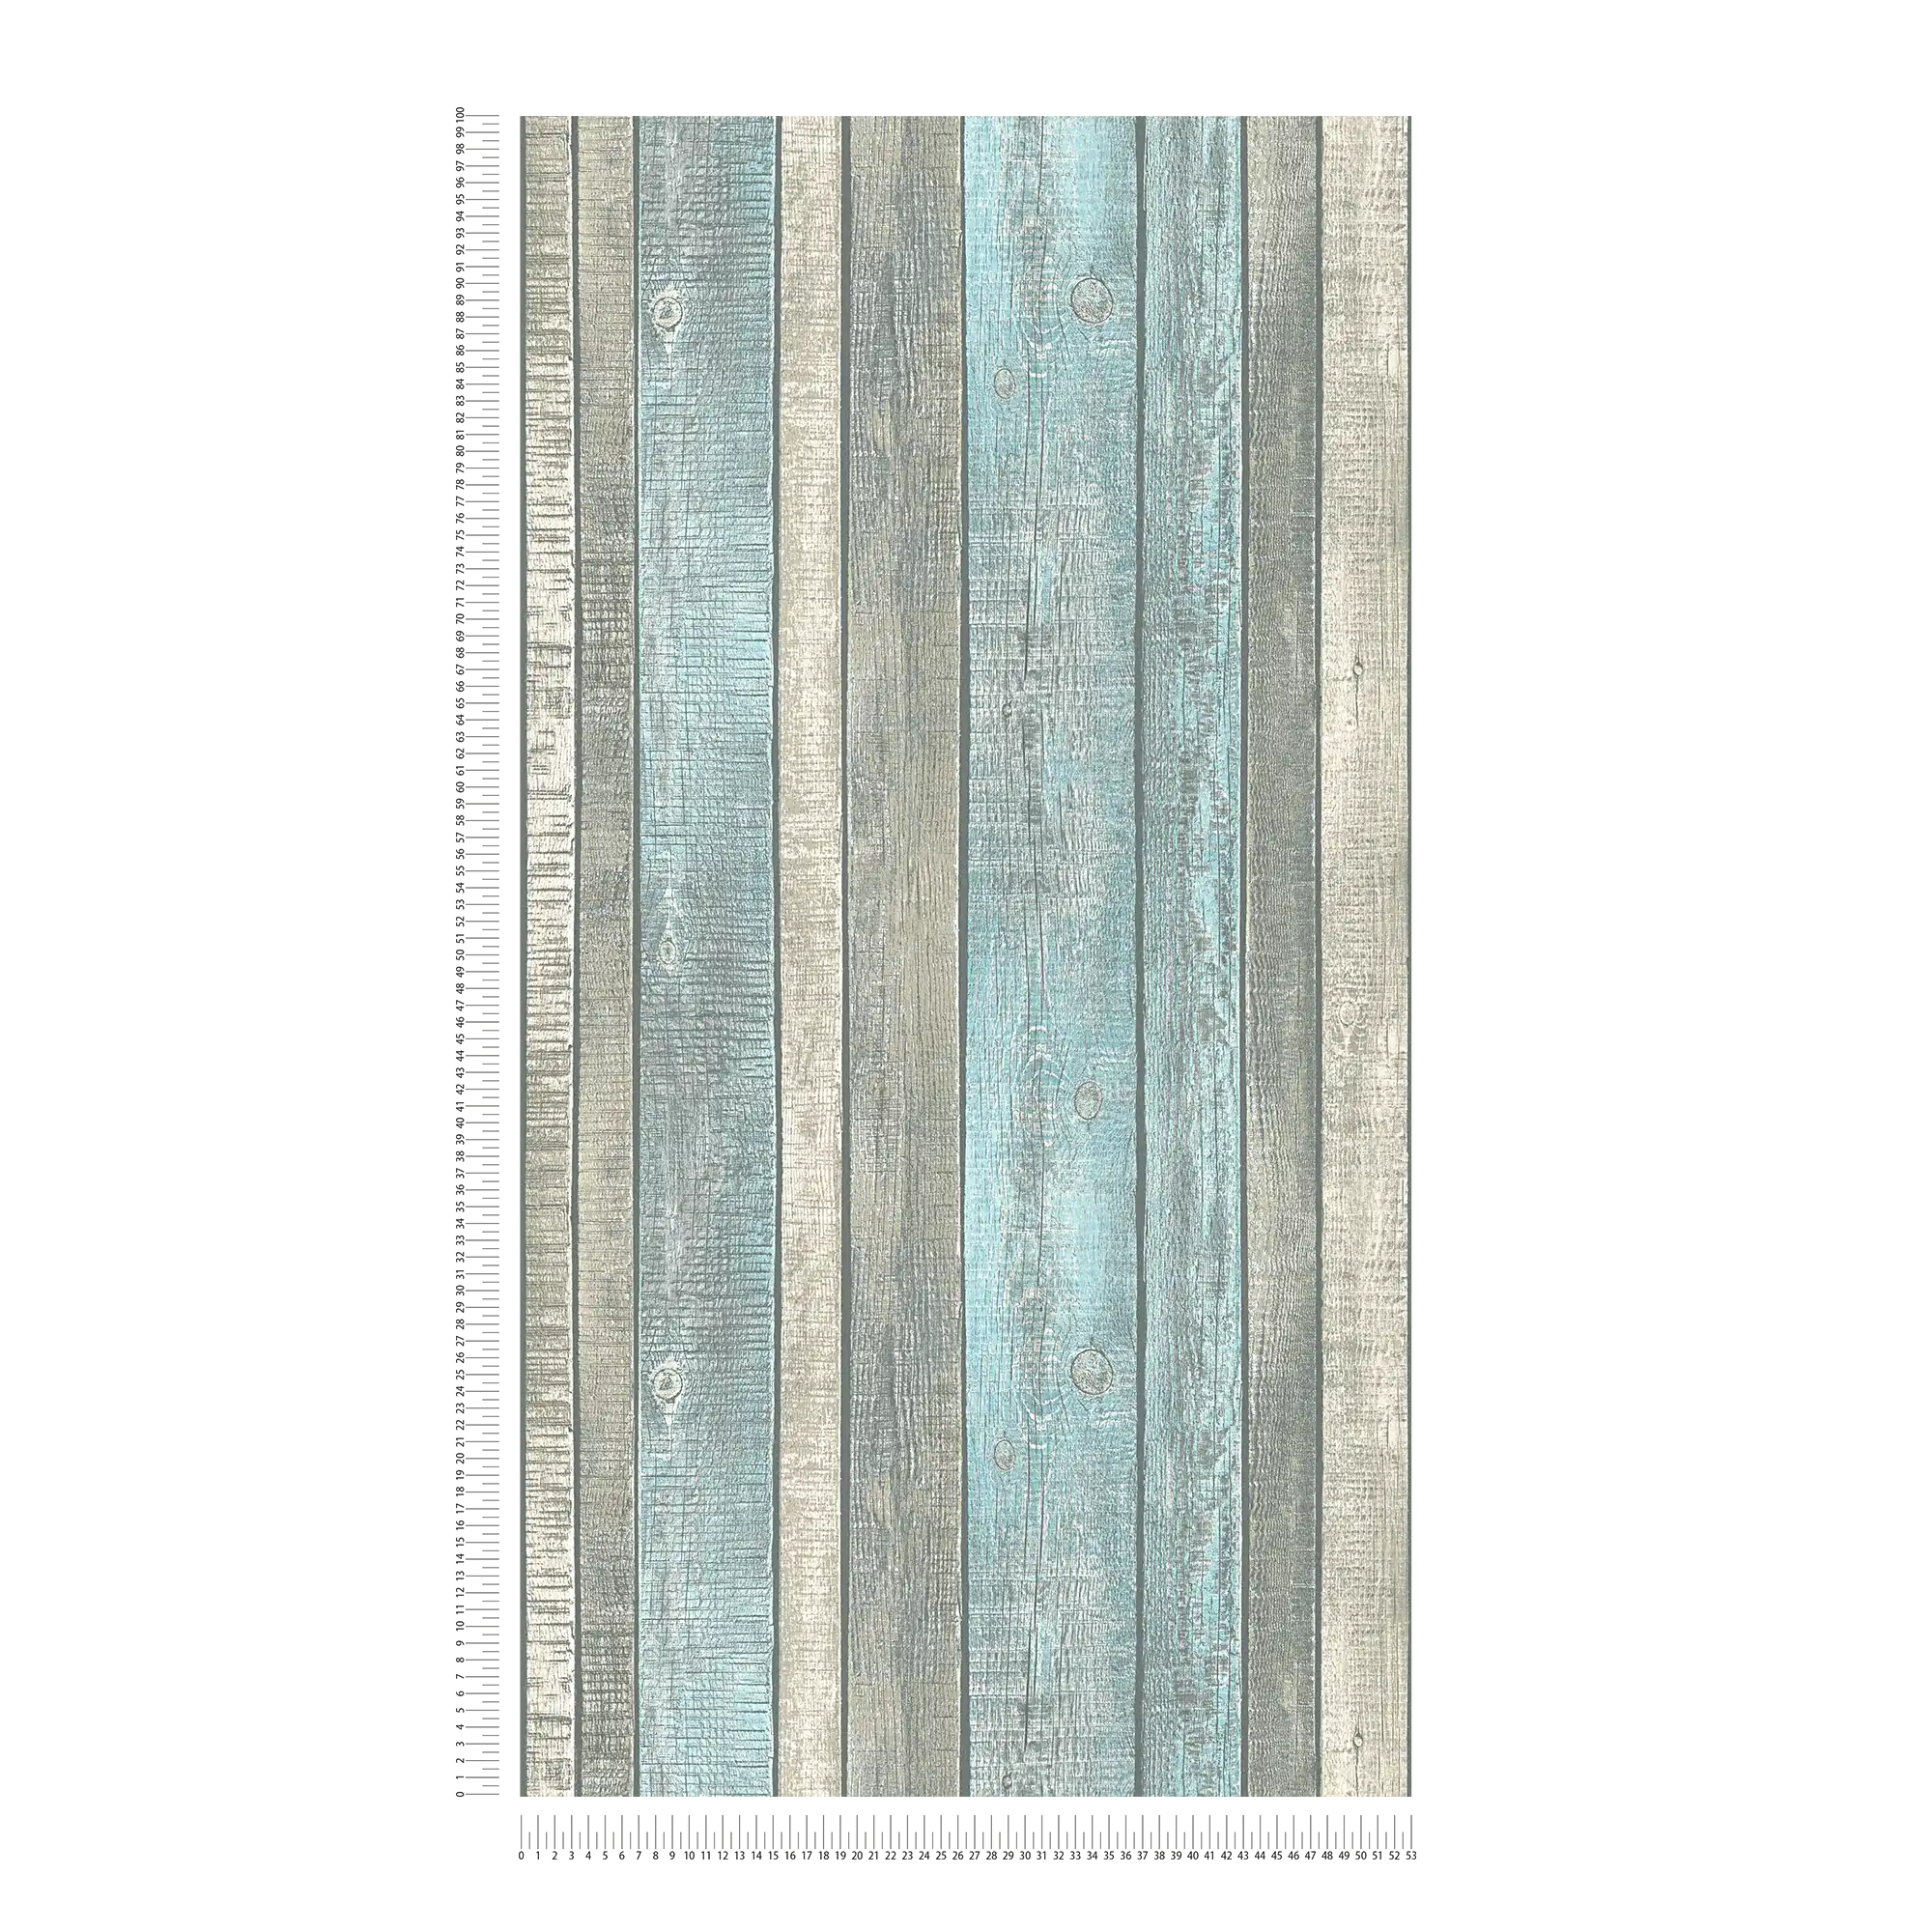             Papel pintado con aspecto de madera con tablas y grano rústico - azul, gris, crema
        